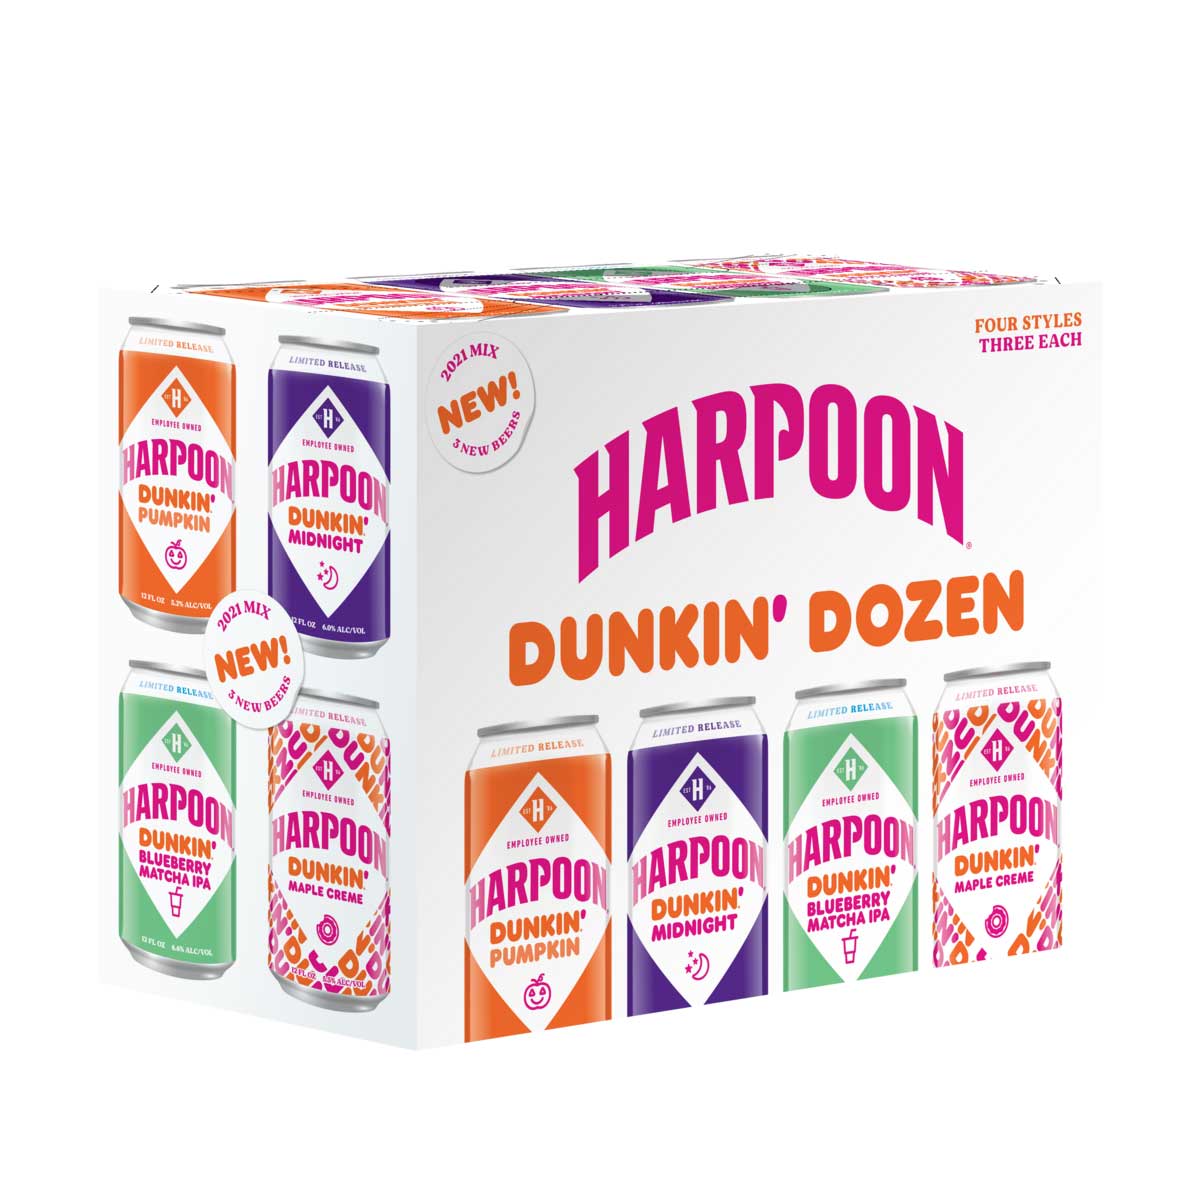 TAG Liquor Stores BC-HARPOON DUNKIN DOZEN 12 CANS MIXER